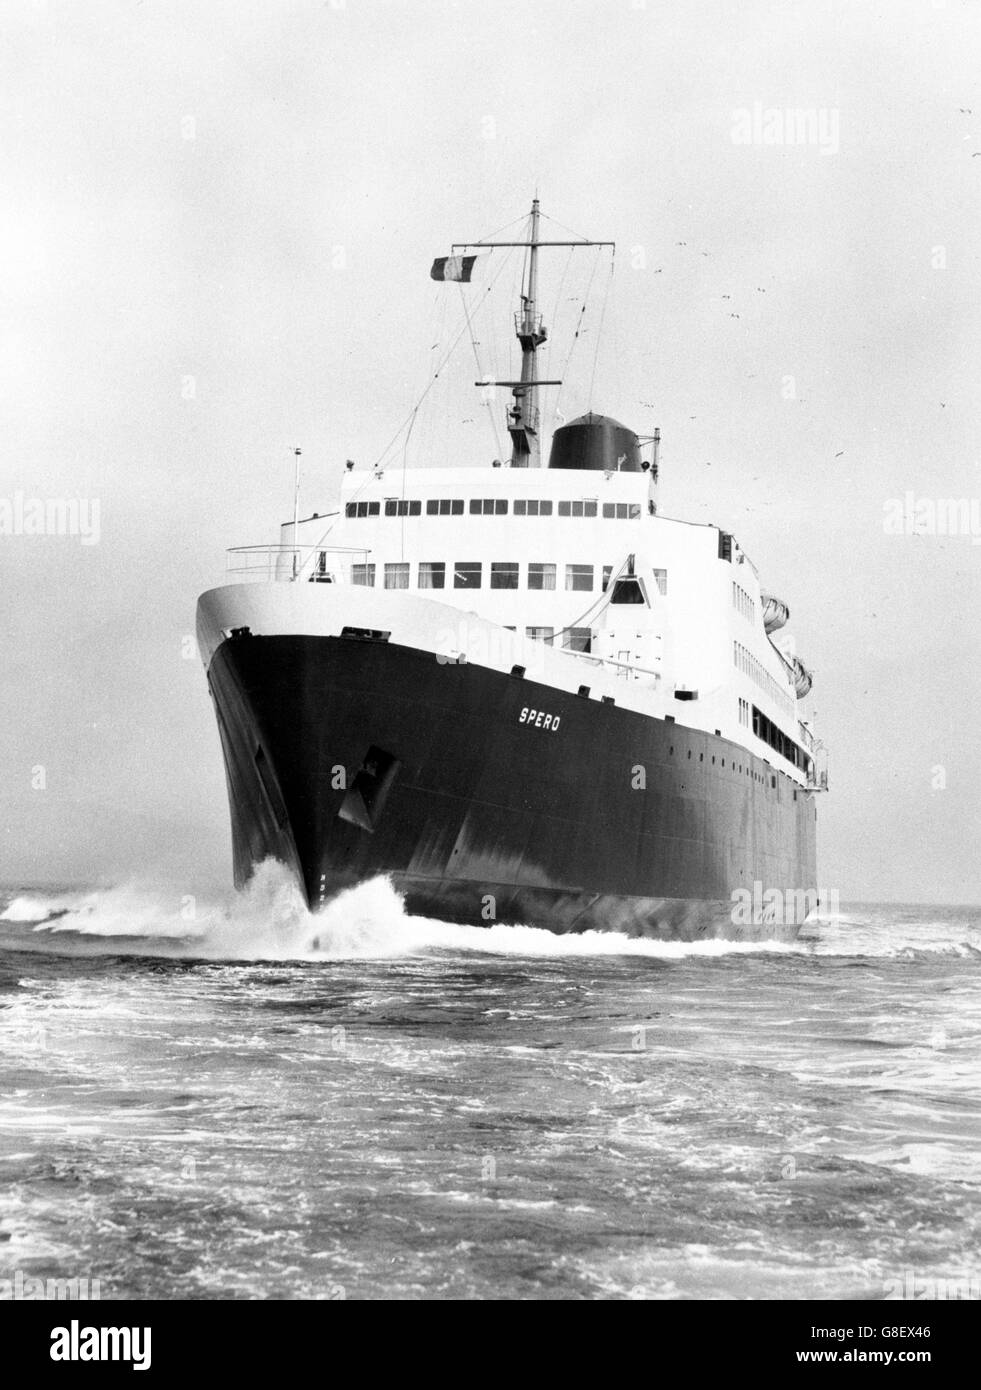 Das Passagierfahrzeug-Containerschiff Spero, eines der fortschrittlichsten britischen konstruierten und im Besitz befindlichen Drive-on/Drive-off-Schiffe, das jemals gebaut wurde, wurde hier während der Geschwindigkeitsversuche auf dem Clyde gesehen. Spero wurde für Ellermans Wilson Line Limited für den Einsatz in der England-Schweden-Linie gebaut. Stockfoto